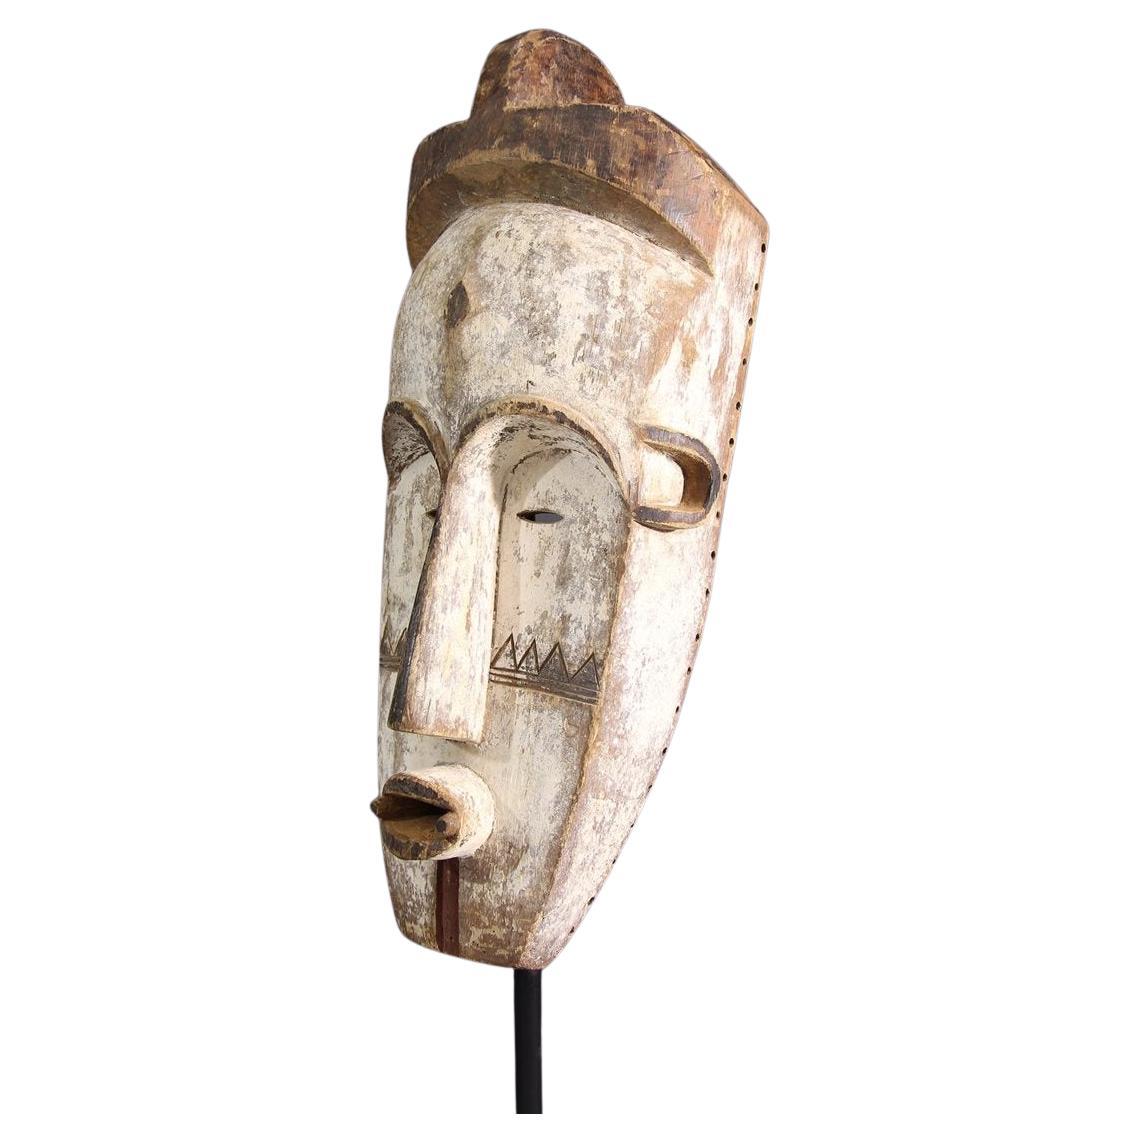 Masque (sculpteur) très expressif et moderne.
Les couleurs poudrées et la forme réduite soulignent la beauté de l'objet.


Masque fang de Ngil 
Dans la catégorie des grands masques africains, les masques Fang du Gabon, généralement recouverts de